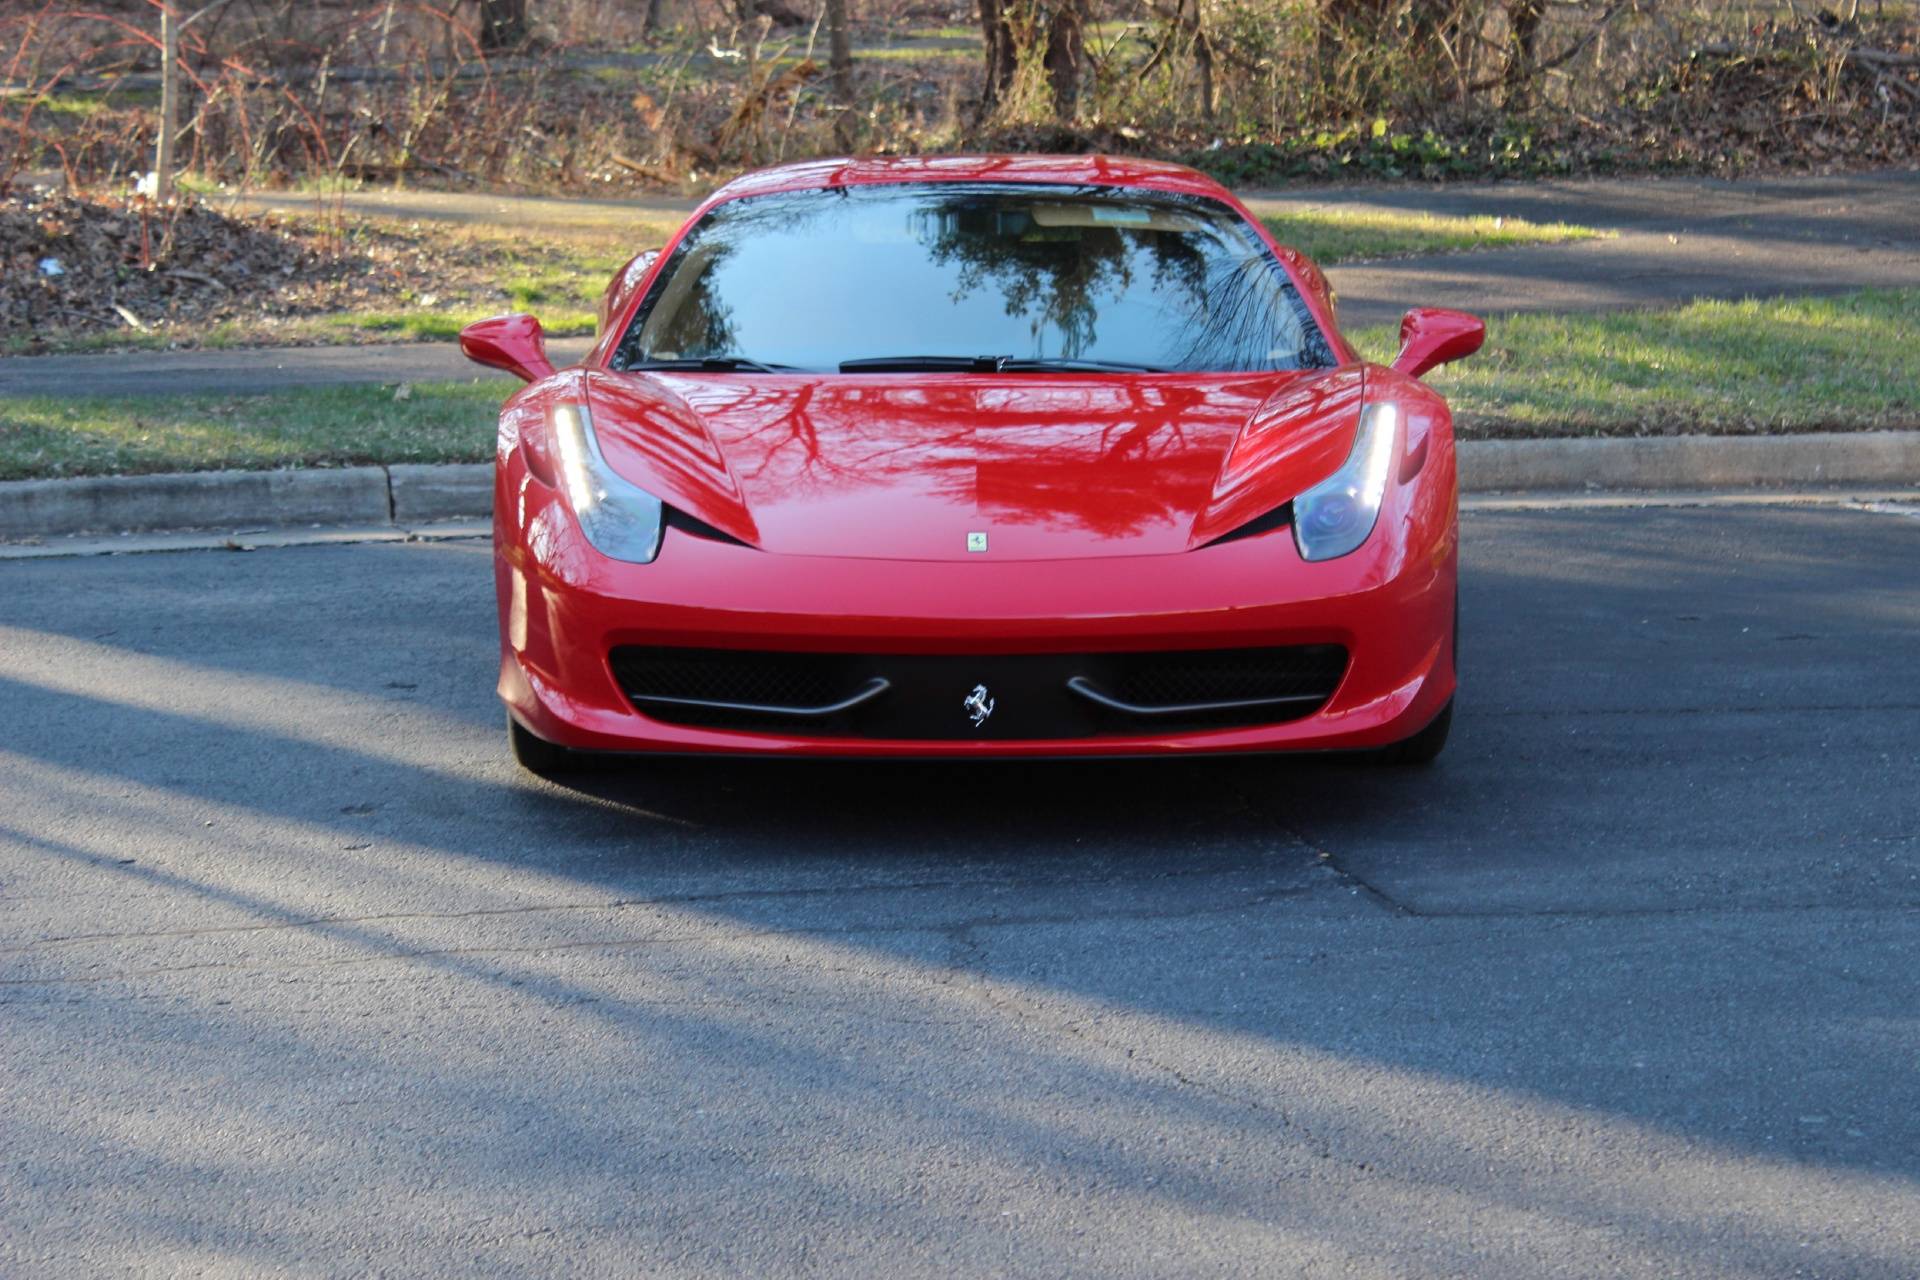 Ferrari 458 italia: технические характеристики, разгон, максимальная скорость, фото, видео - вики суперкары